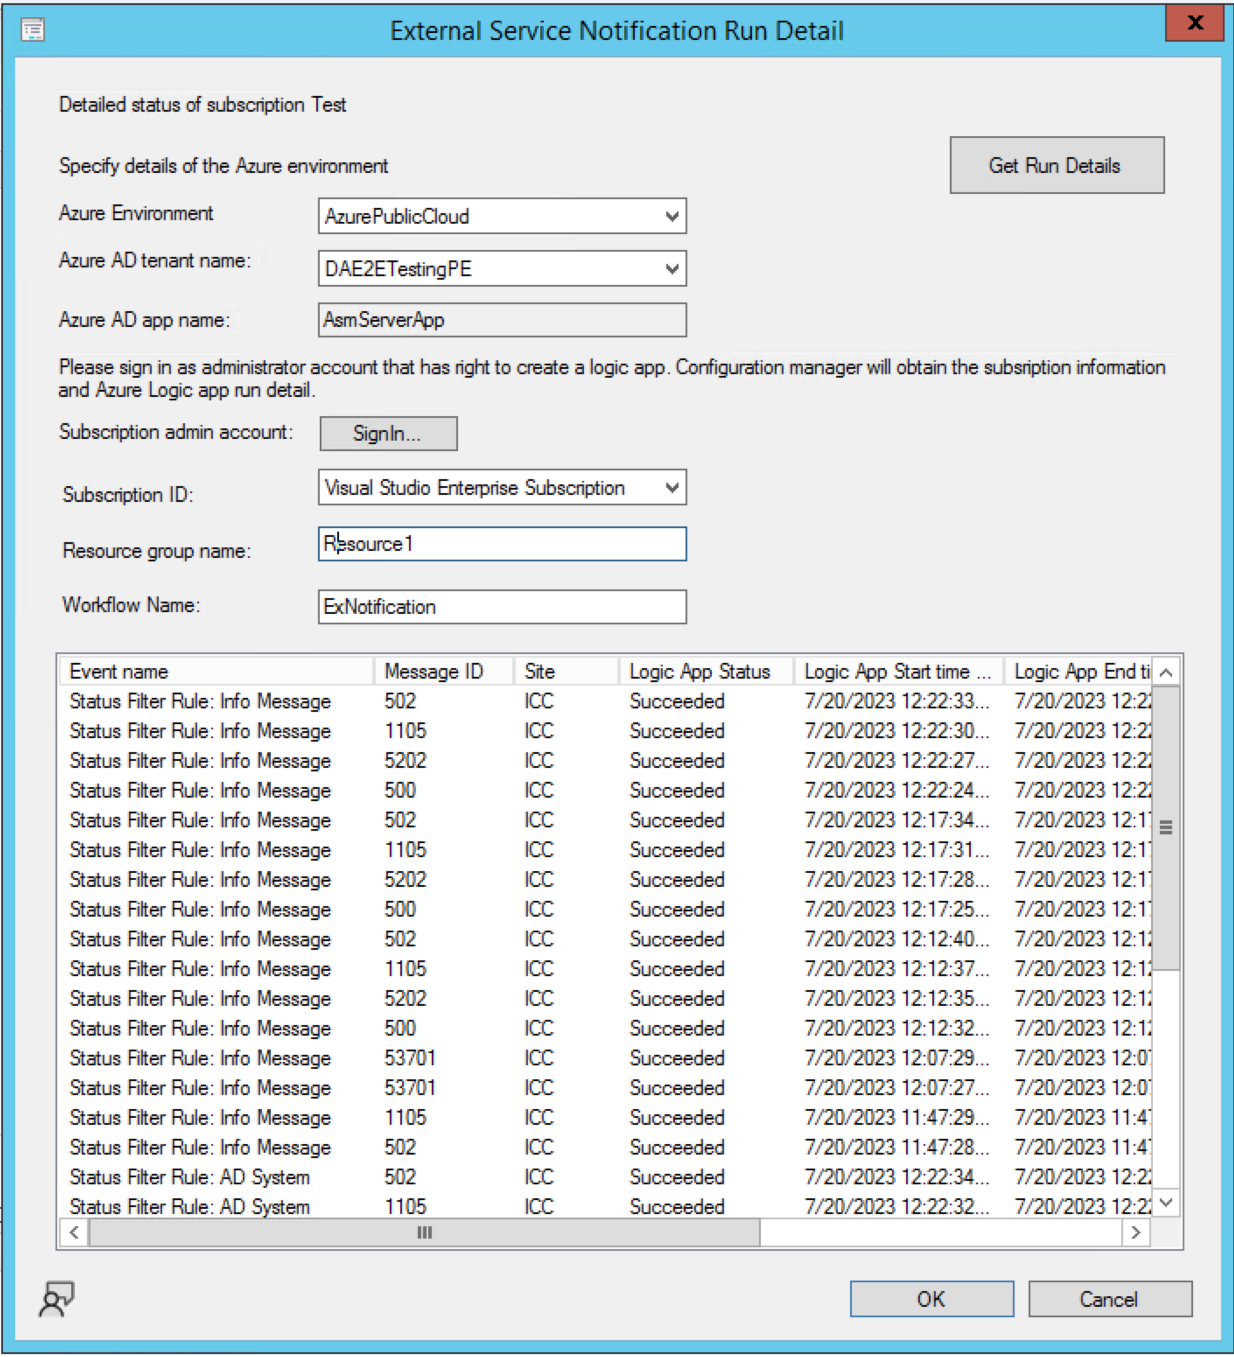 A screenshot of the run details of external service notification wizard.